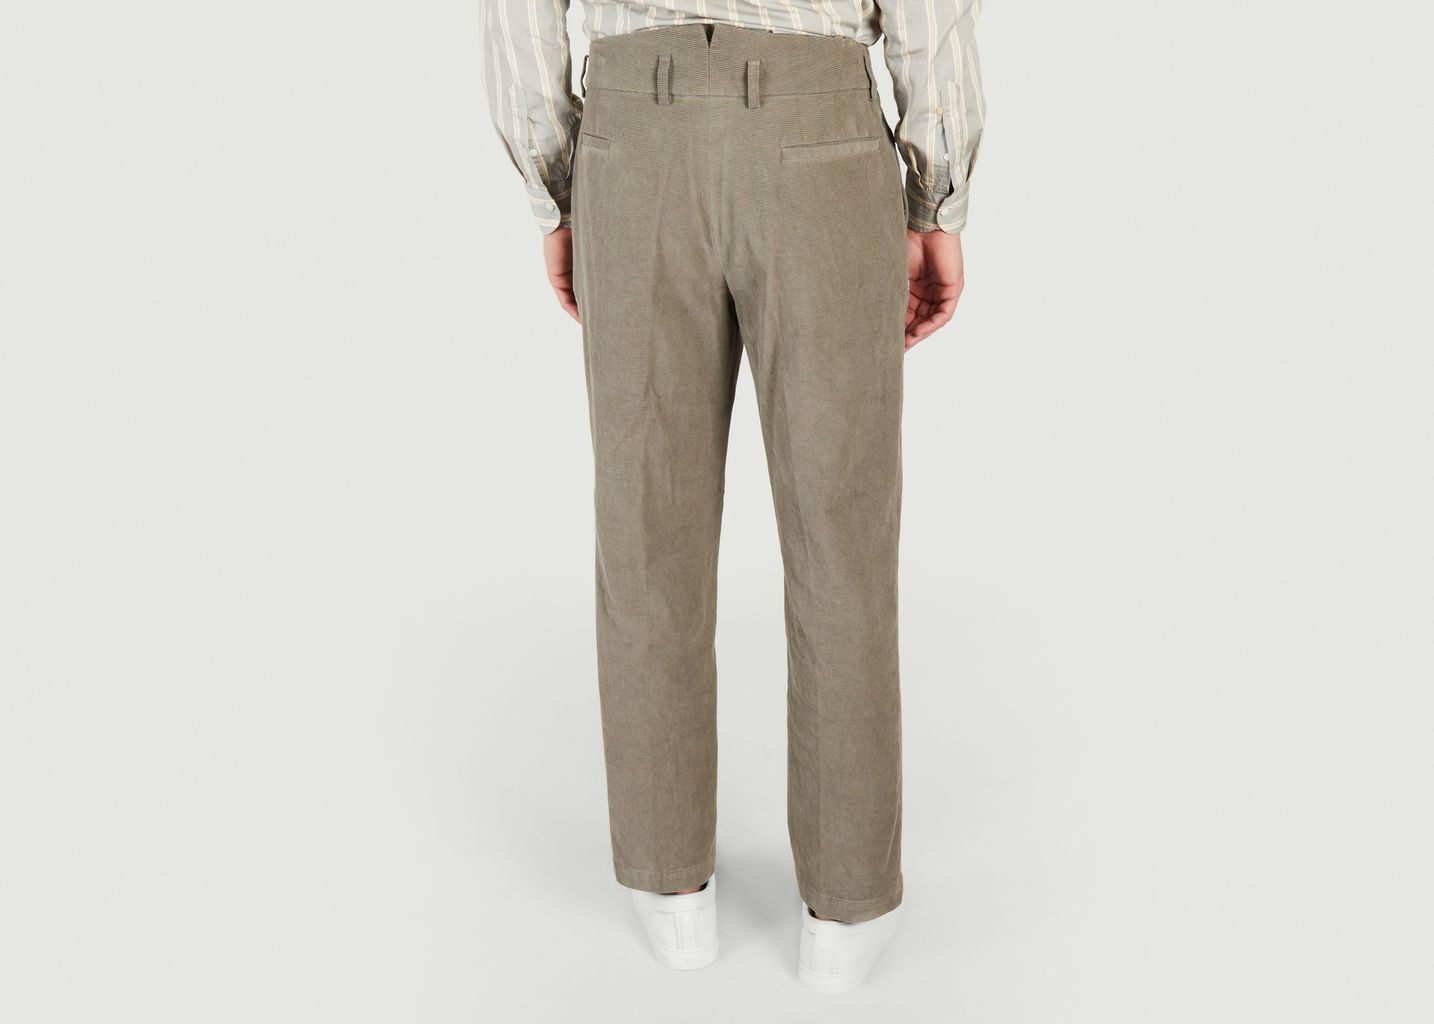 Pants Miniera  in hemp wool and cotton  - A.B.C.L. Garments